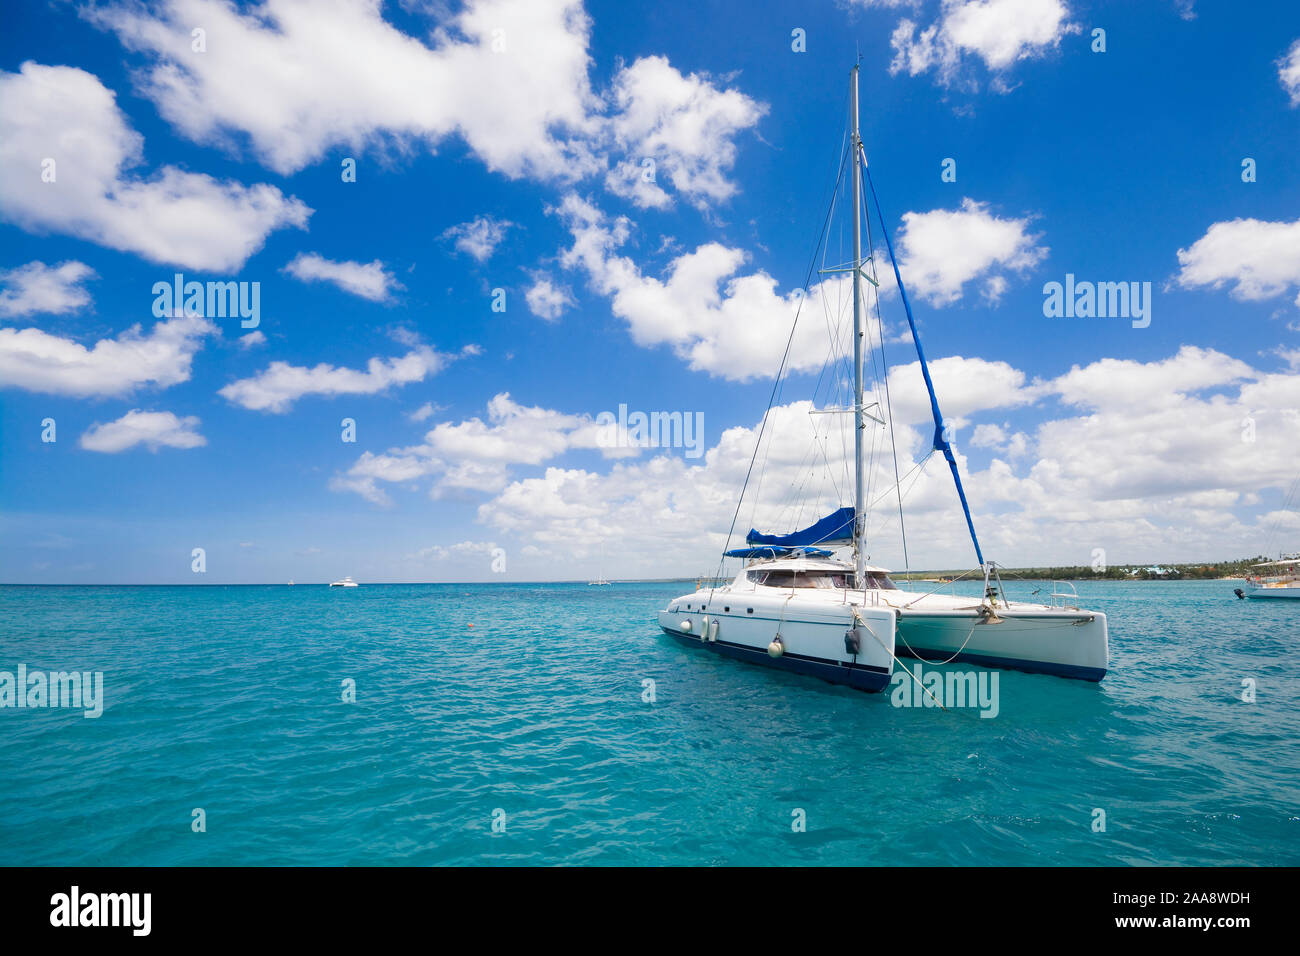 Luxury yacht ancorati sulle acque turchesi del Mar dei Caraibi, Repubblica Dominicana Foto Stock